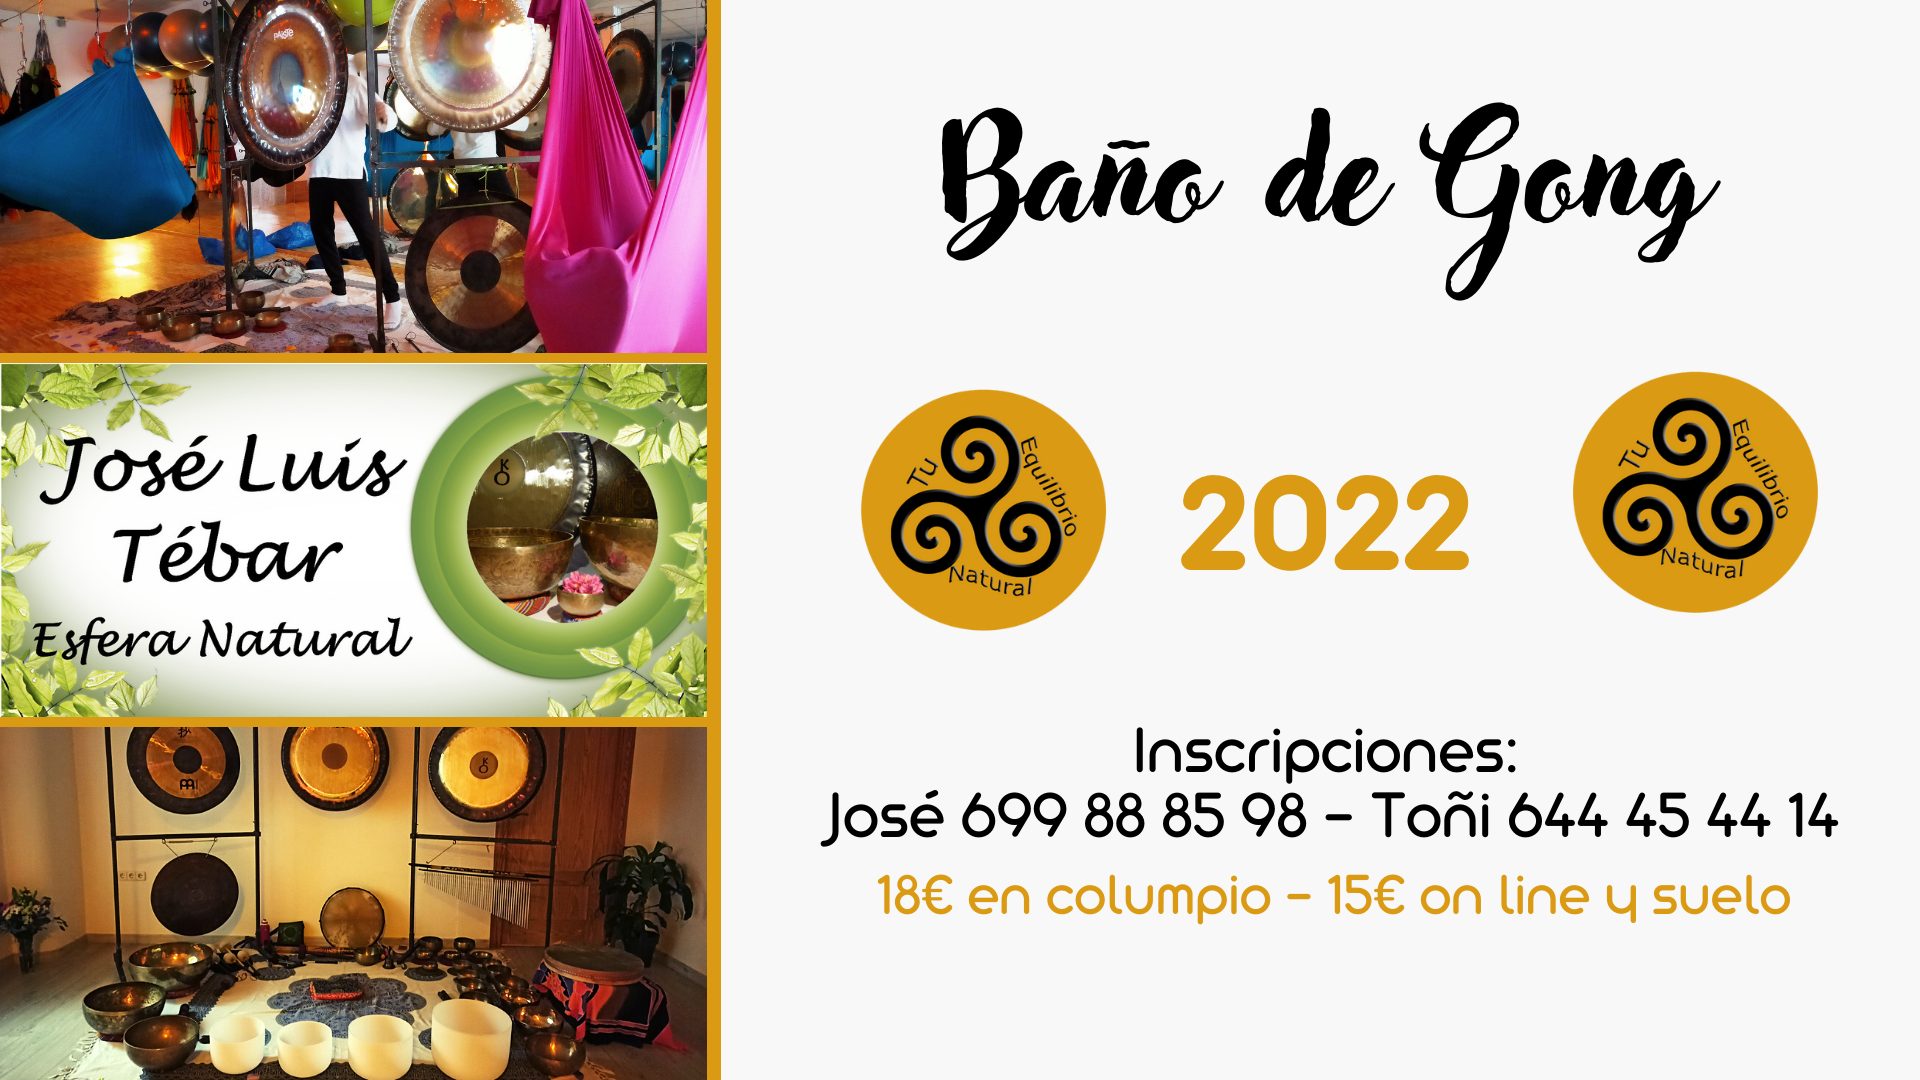 29/10/22 Sabado 29 de Octubre a las 18:30 - Baño de Gongs en Tu equilibrio natural en Los Alcazares (Murcia)